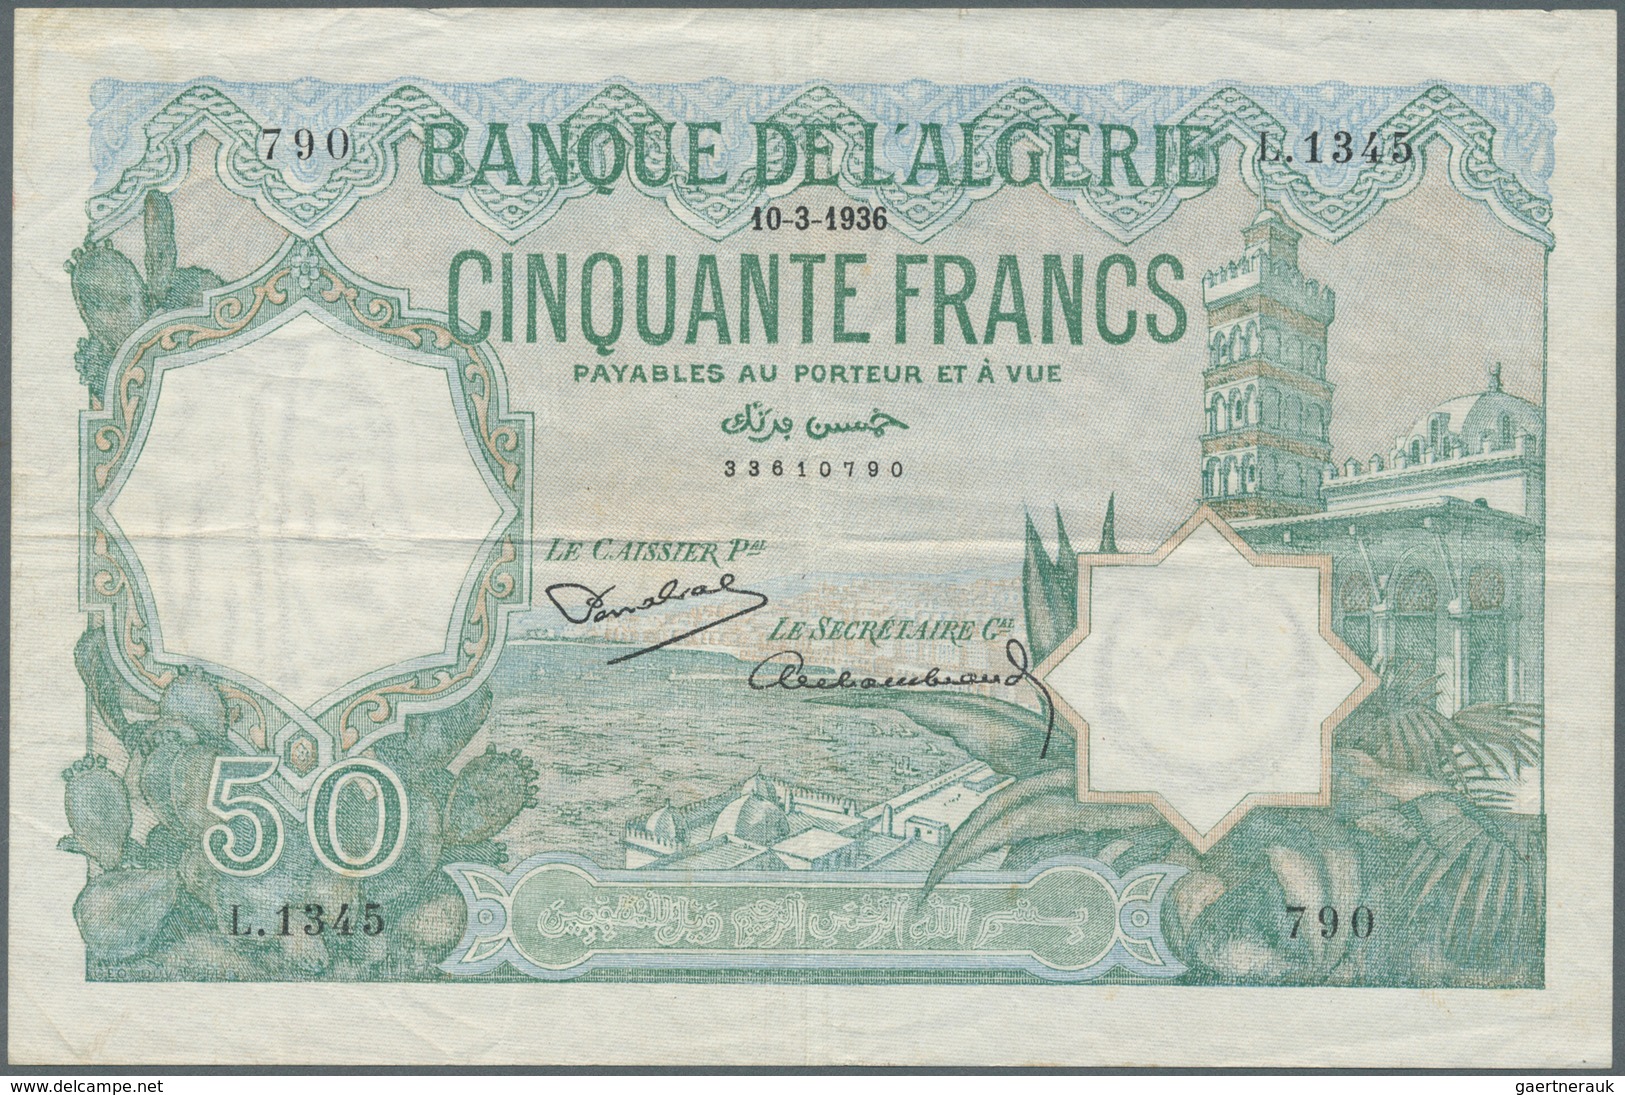 Algeria / Algerien: Banque De L'Algerie 50 Francs 1936, P.80, Very Nice Condition With Strong Paper - Algerien